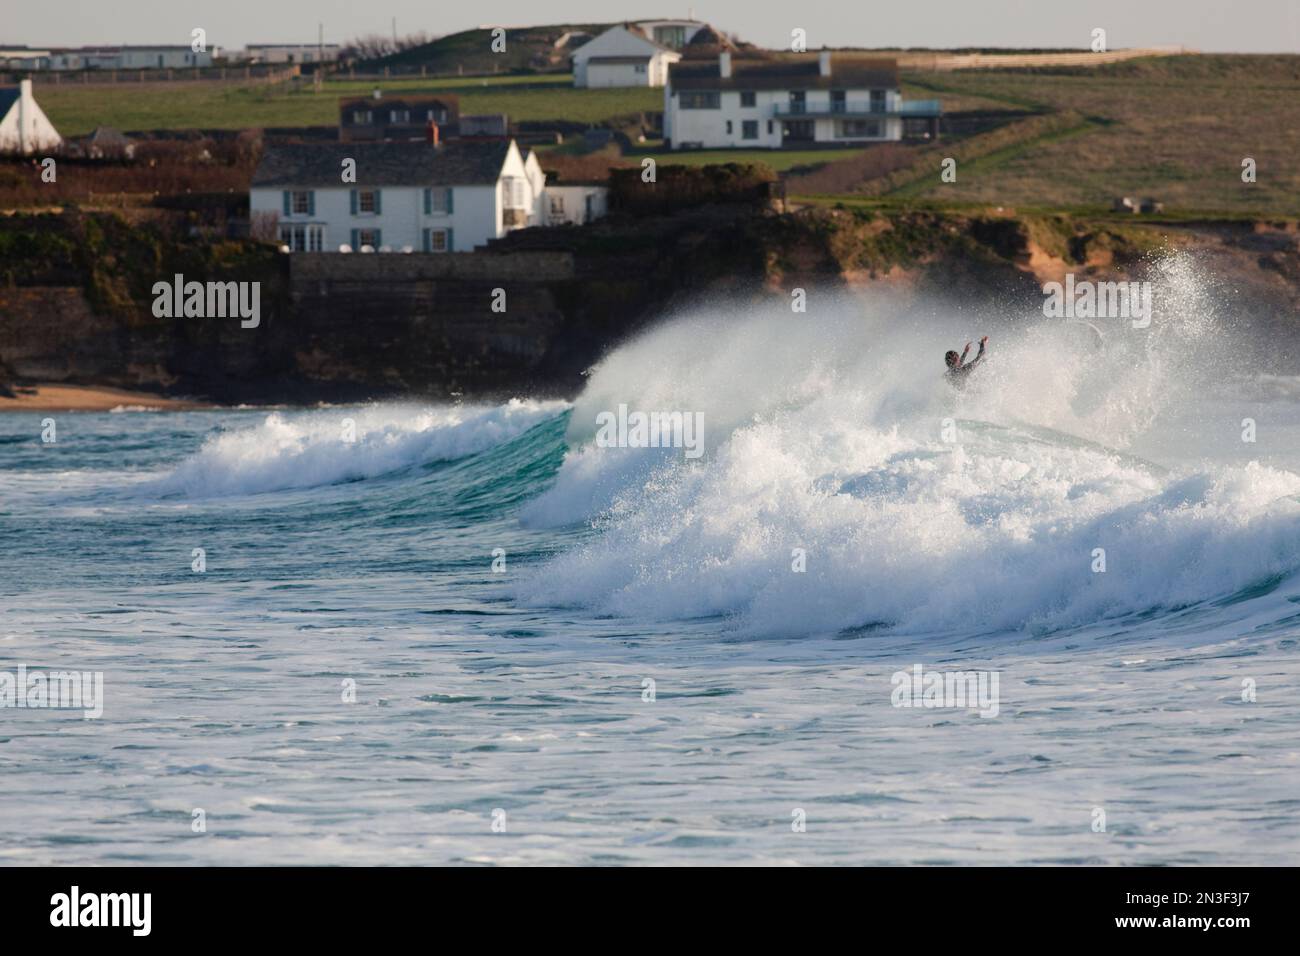 Personne appréciant les vagues de l'océan à Constantine Bay près de Padstow; Constantine Bay, Cornwall, Angleterre, Grande-Bretagne Banque D'Images